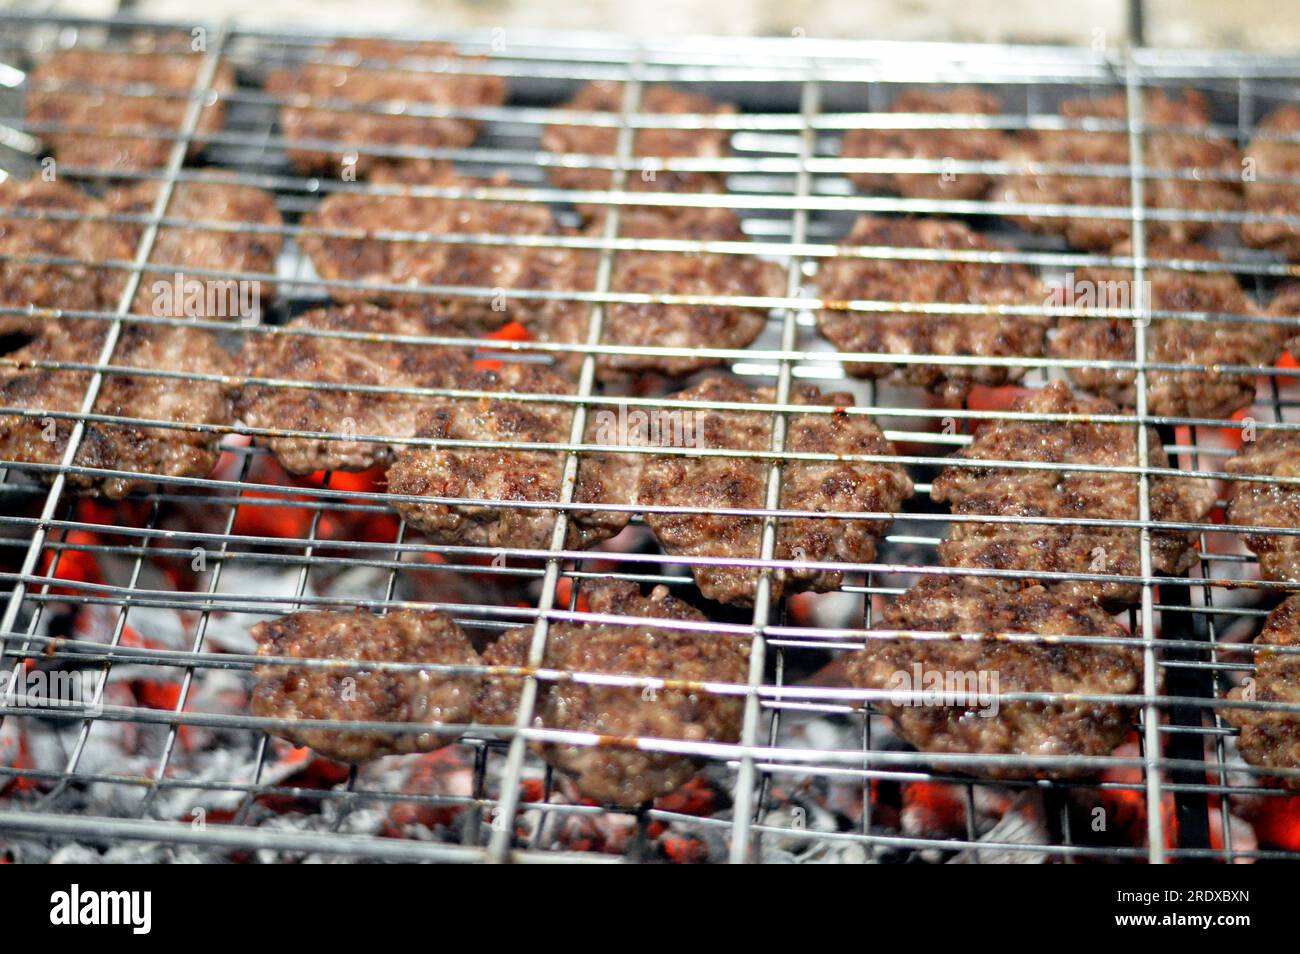 Polpette alla griglia kofta kufta di carne macinata di manzo in una rete a rete grigliata con manico su un carbone con fuoco e fuoco alla griglia, barbecue succoso Foto Stock